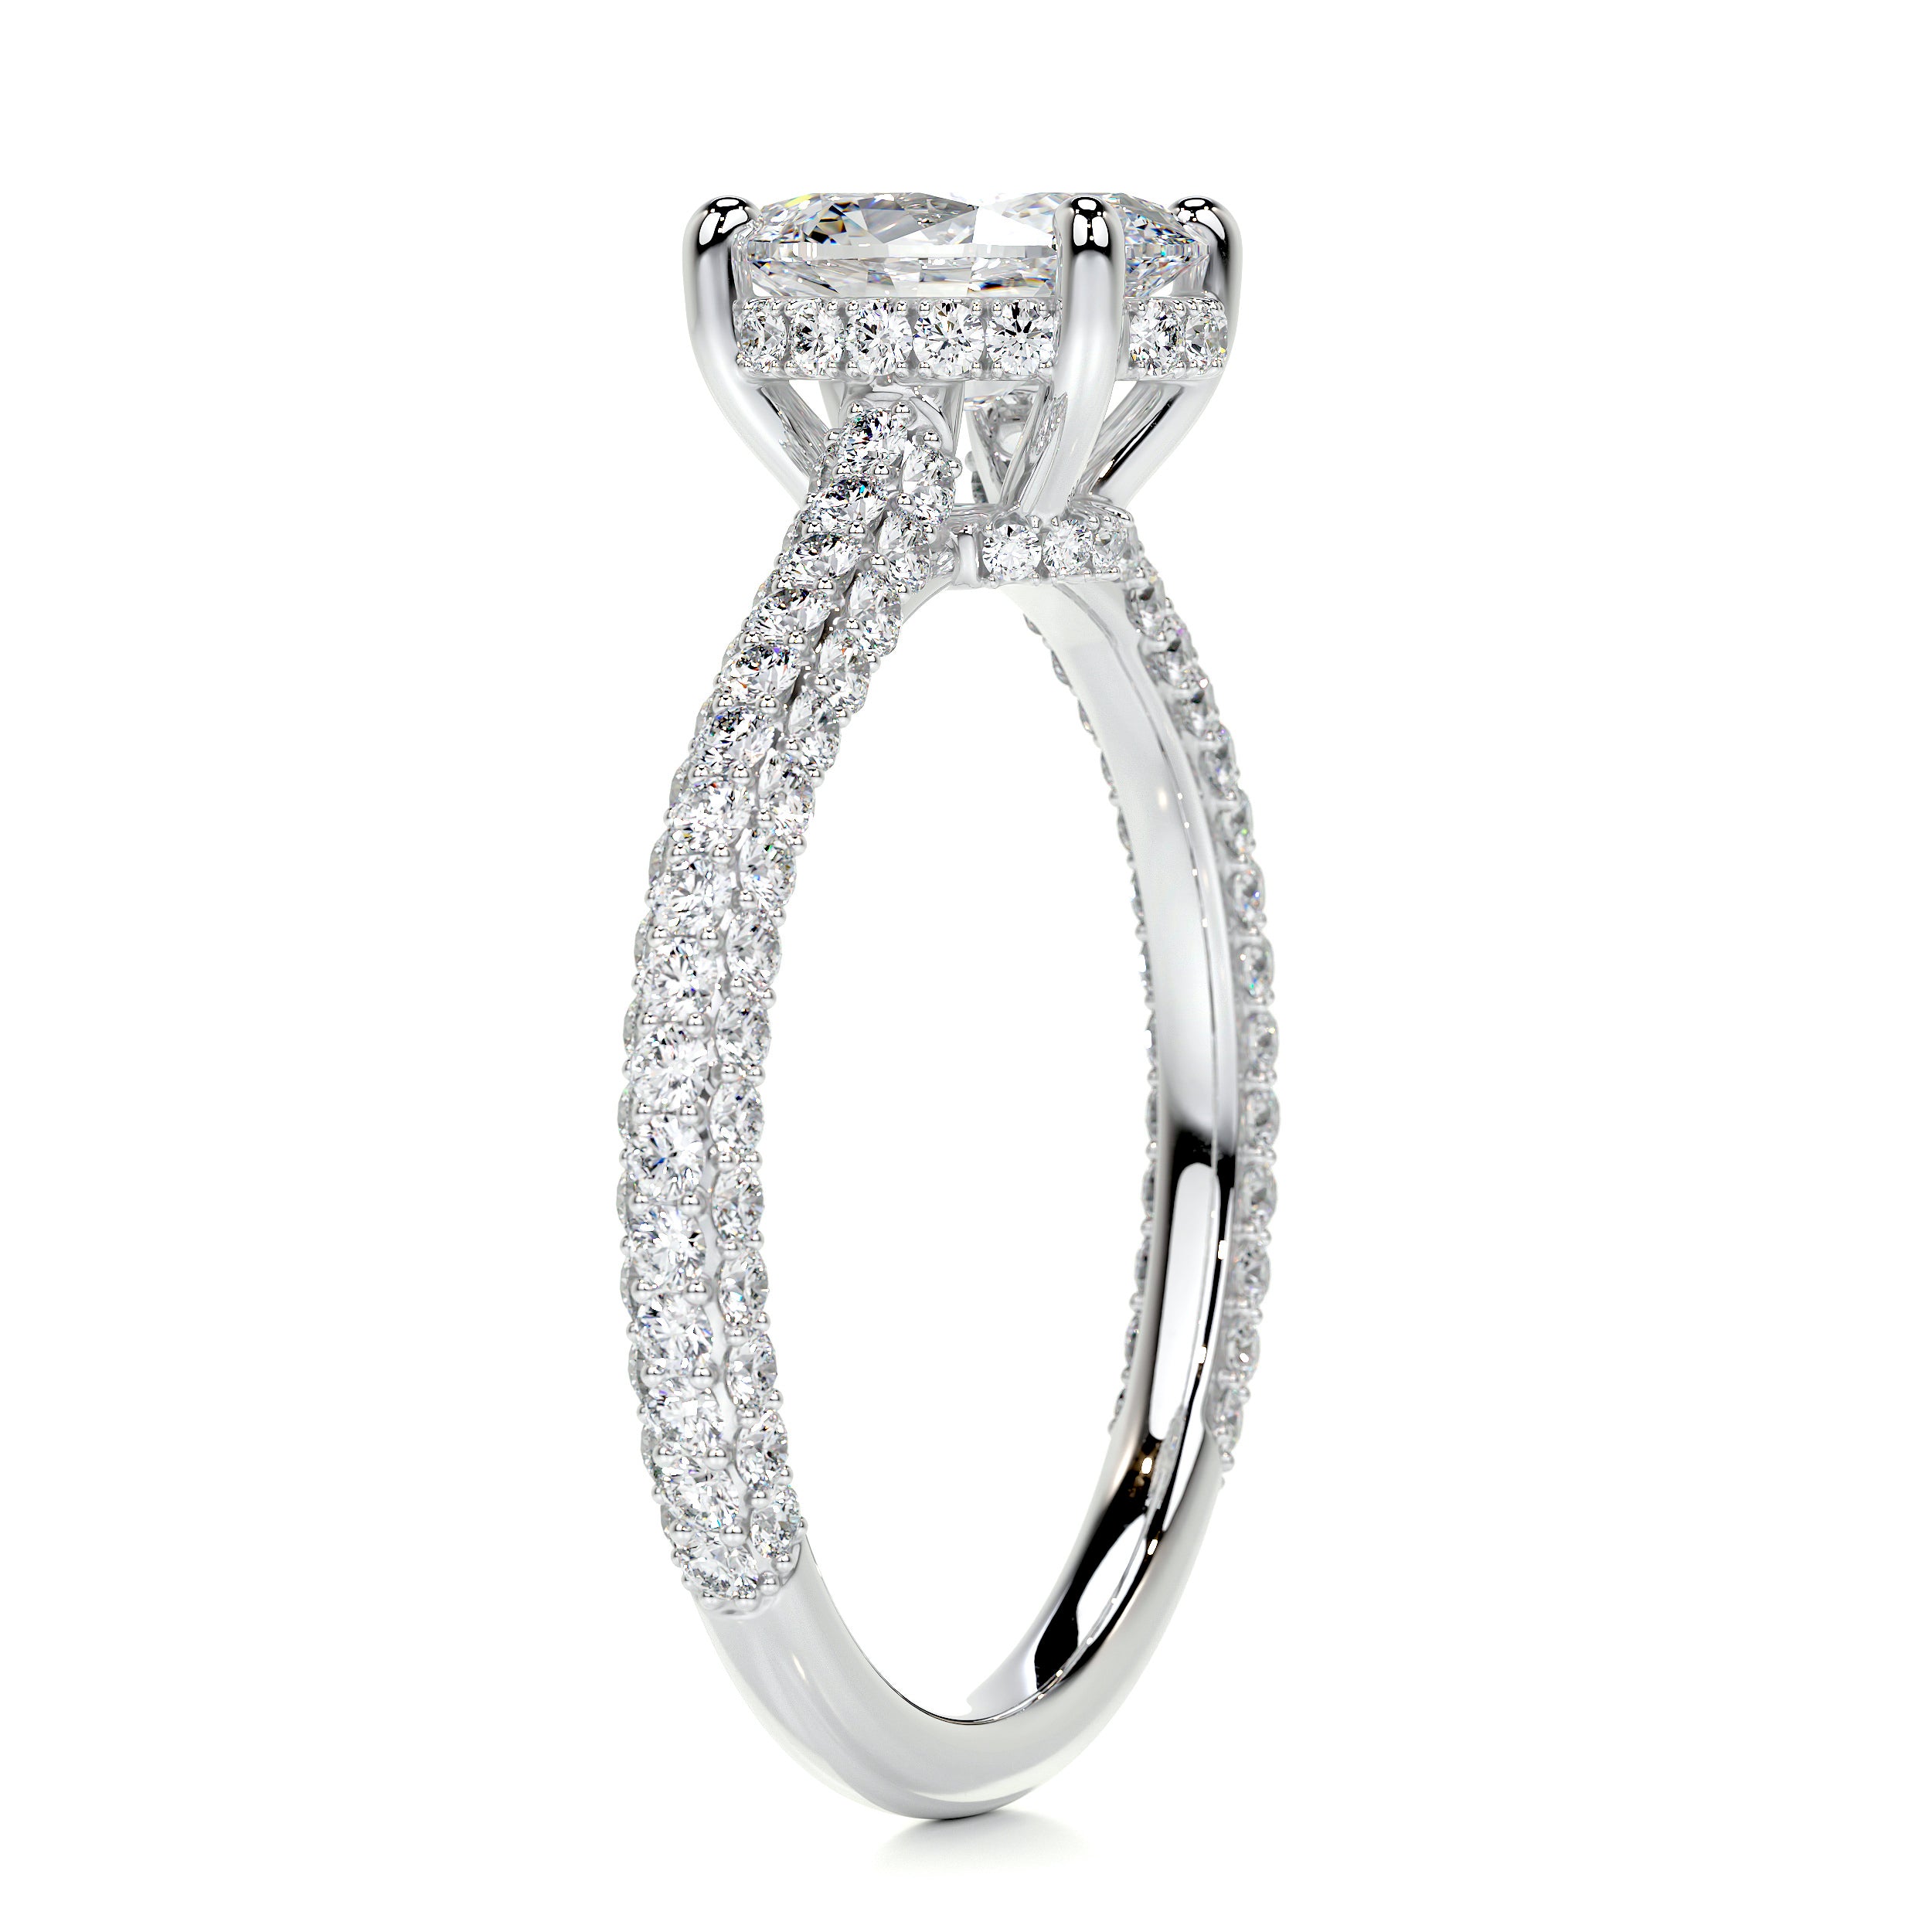 Rebecca Diamond Engagement Ring   (1.8 Carat) -Platinum